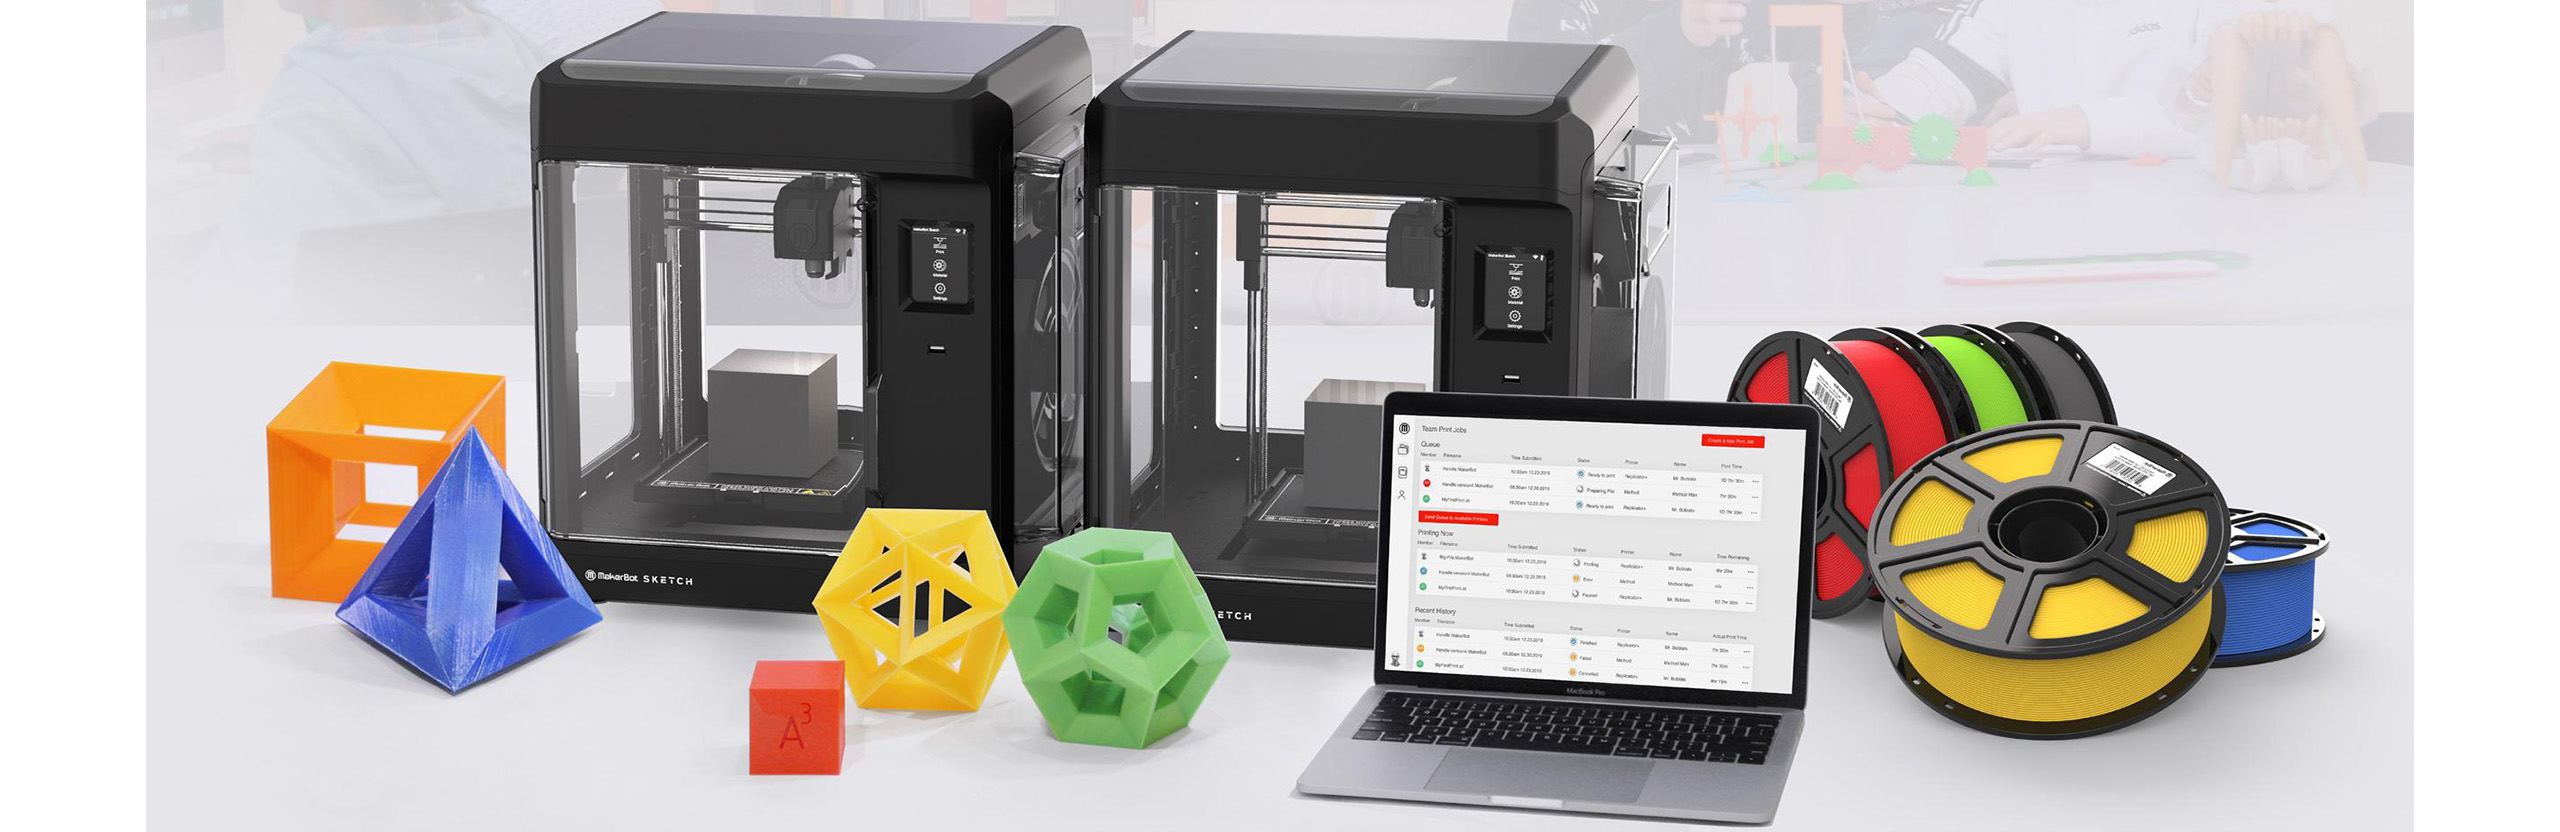 Clautic utiliza las impresoras 3D Makerbot para sus clases de tecnología y robótica